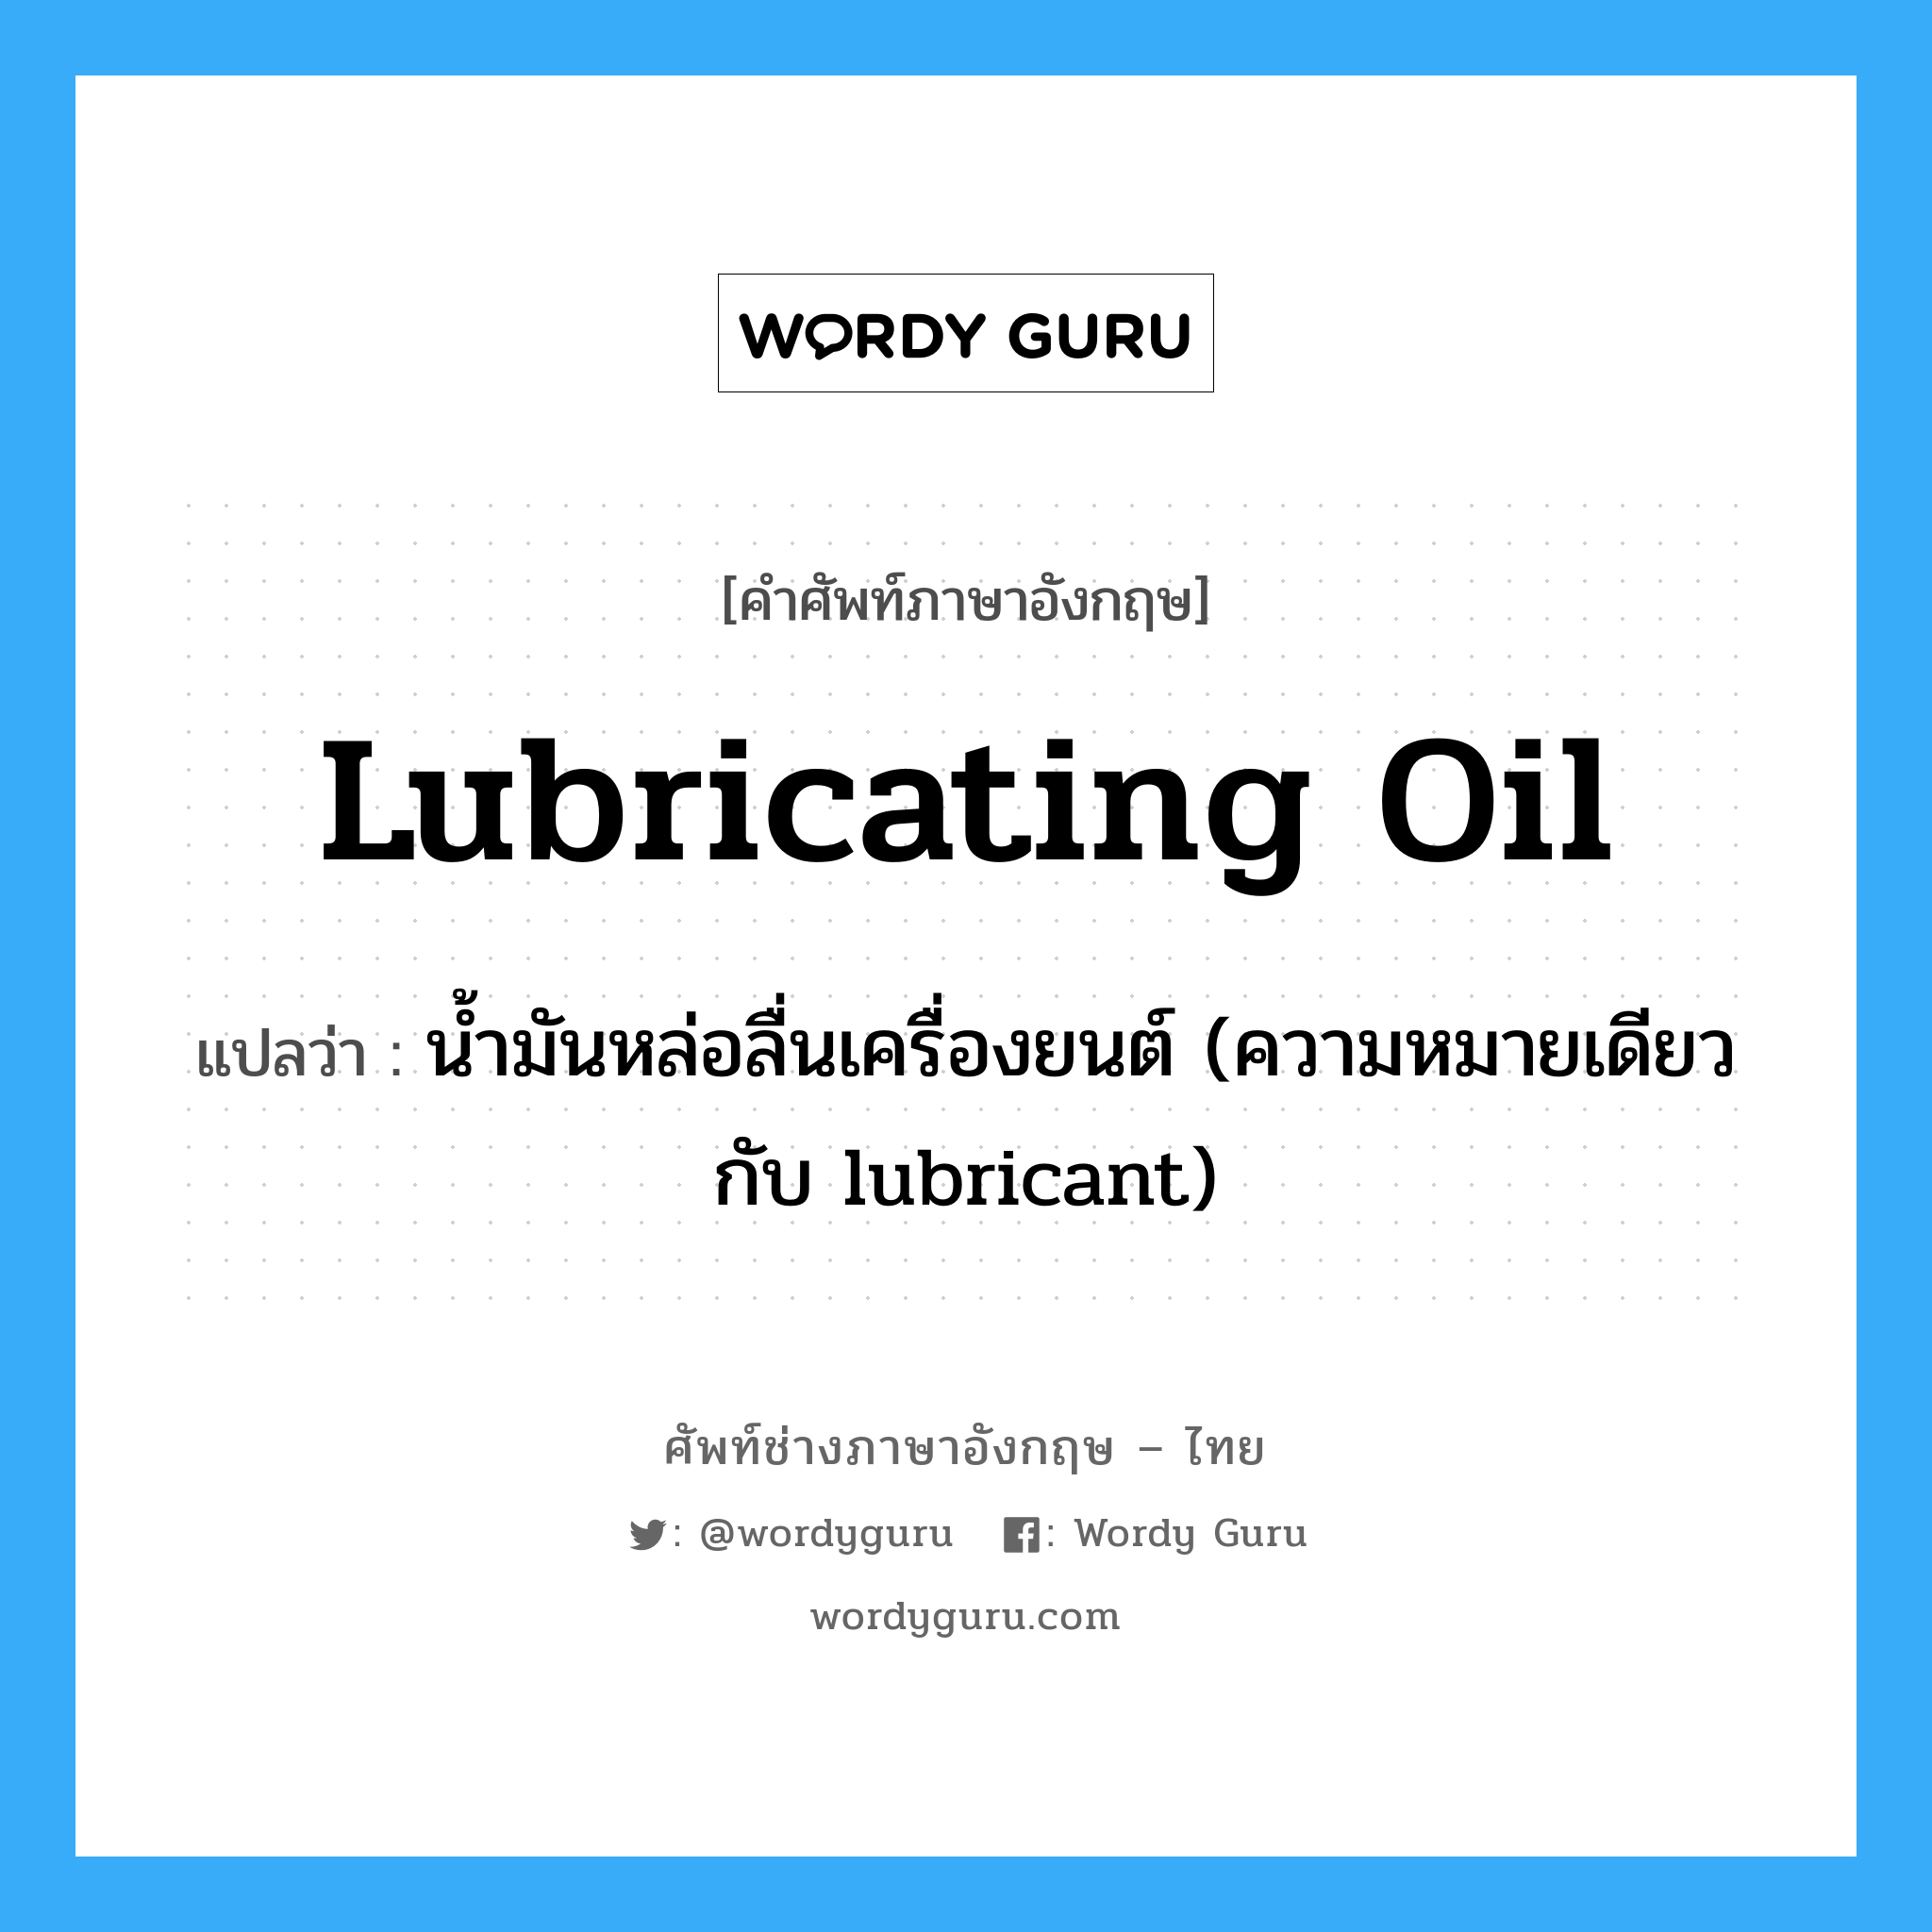 lubricating oil แปลว่า?, คำศัพท์ช่างภาษาอังกฤษ - ไทย lubricating oil คำศัพท์ภาษาอังกฤษ lubricating oil แปลว่า น้ำมันหล่อลื่นเครื่องยนต์ (ความหมายเดียวกับ lubricant)